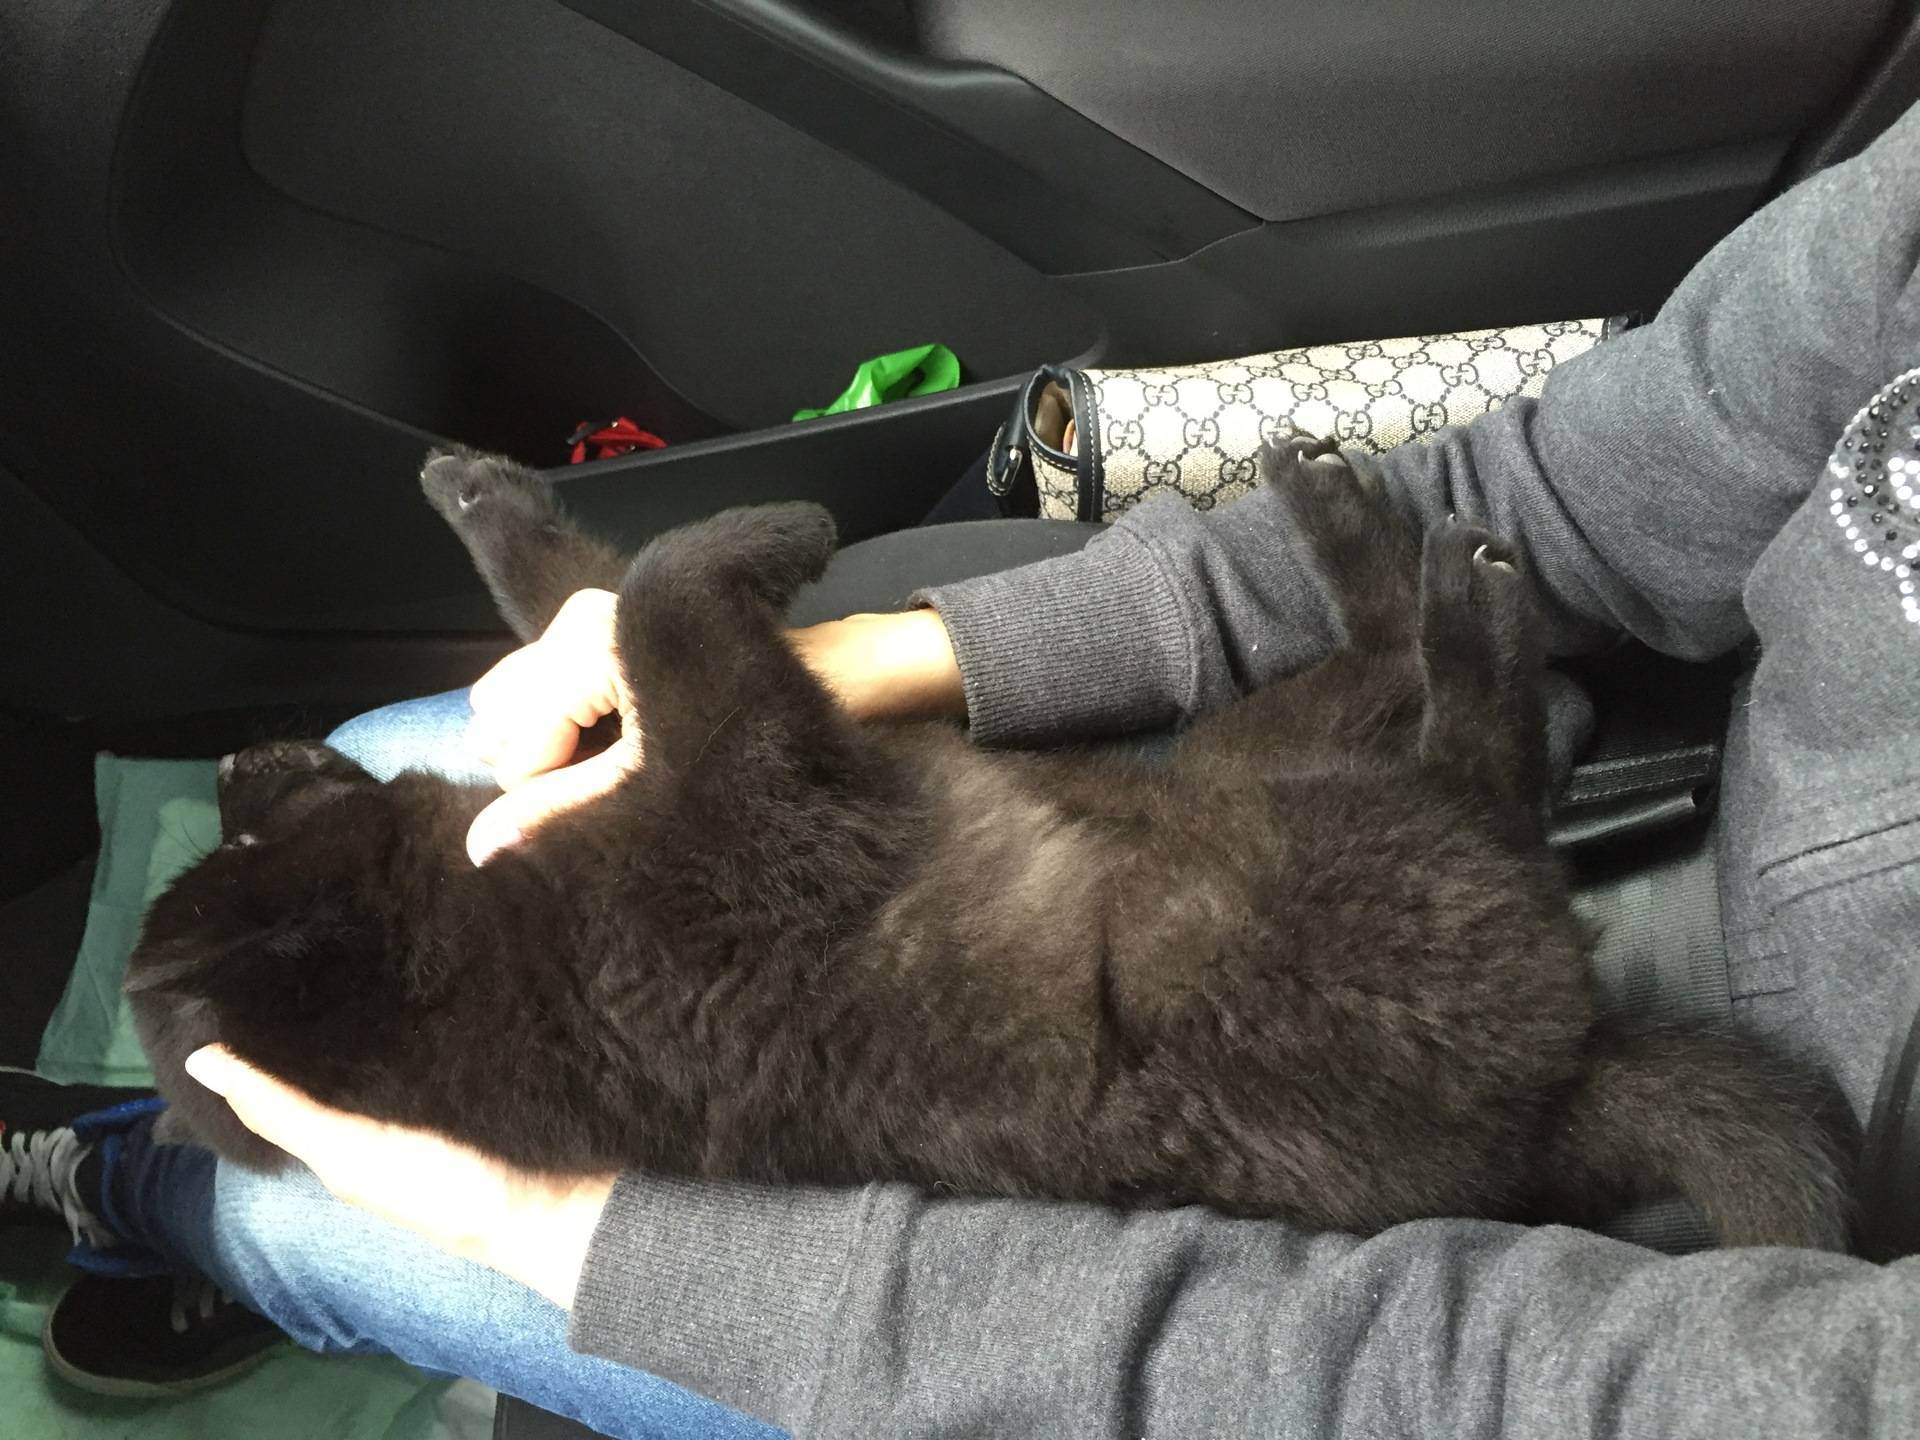 Как правильно перевезти кошку в автомобиле на дальнее расстояние без переноски